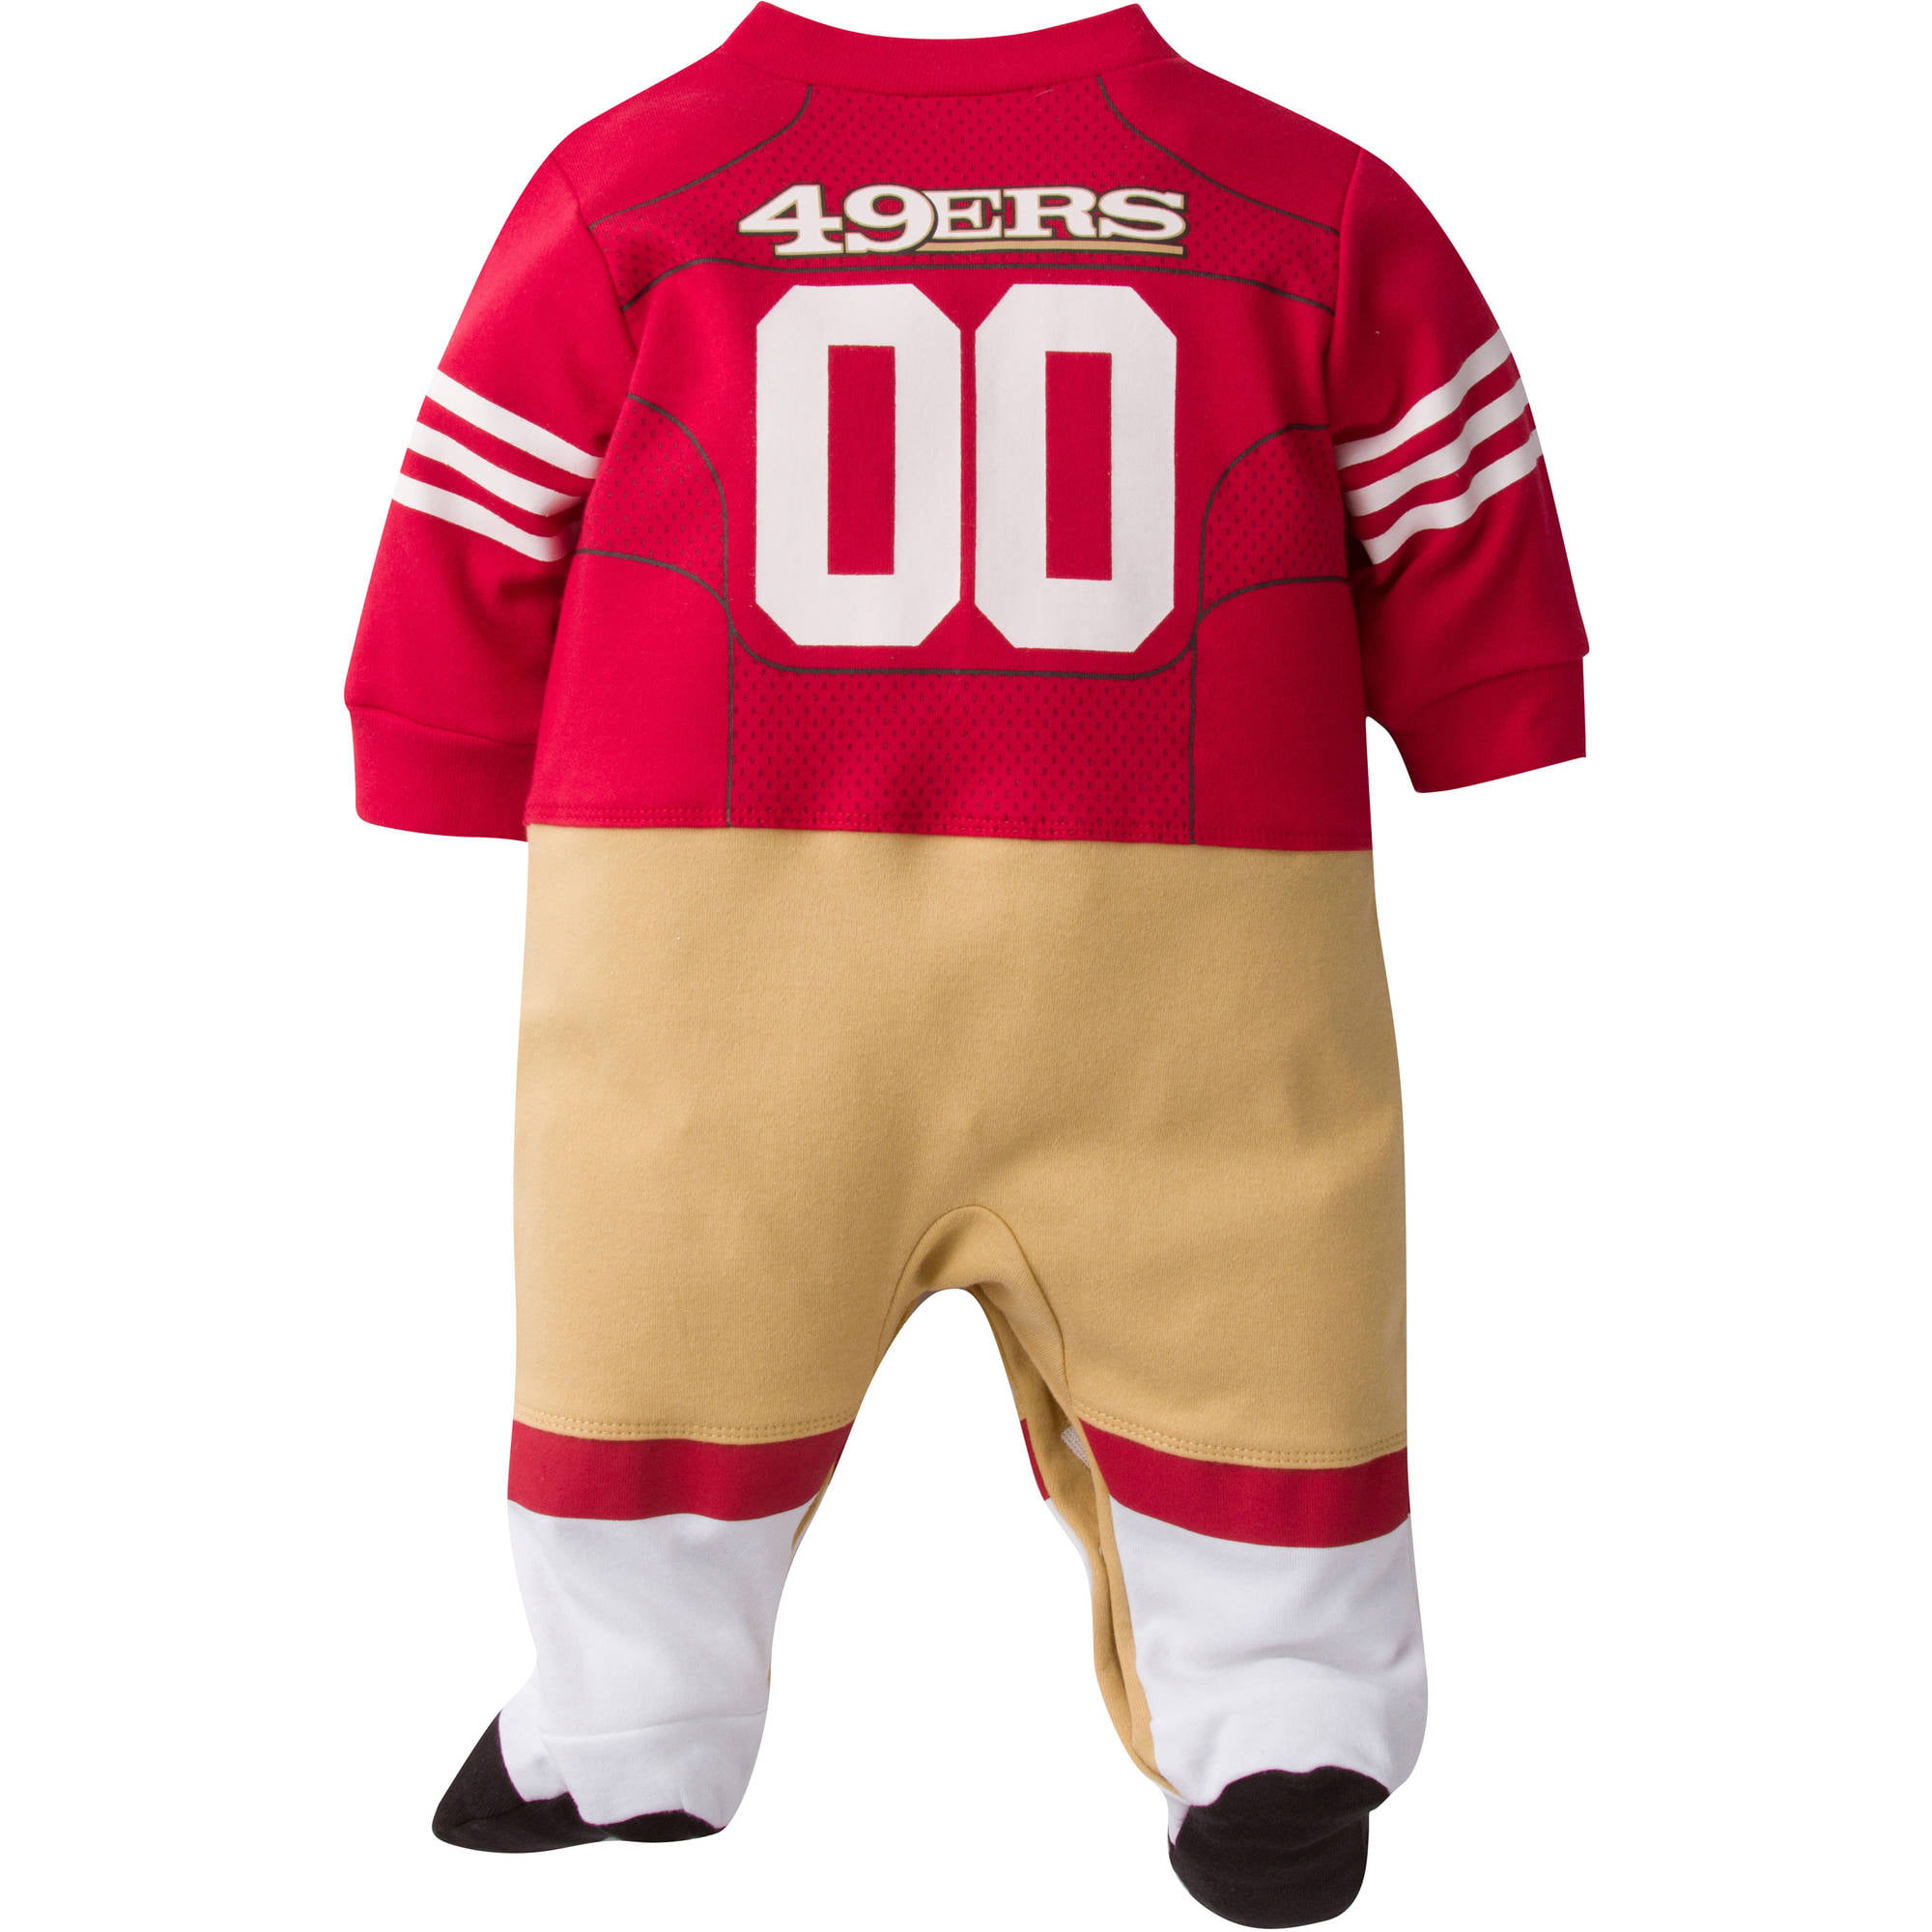 49ers onesie jersey